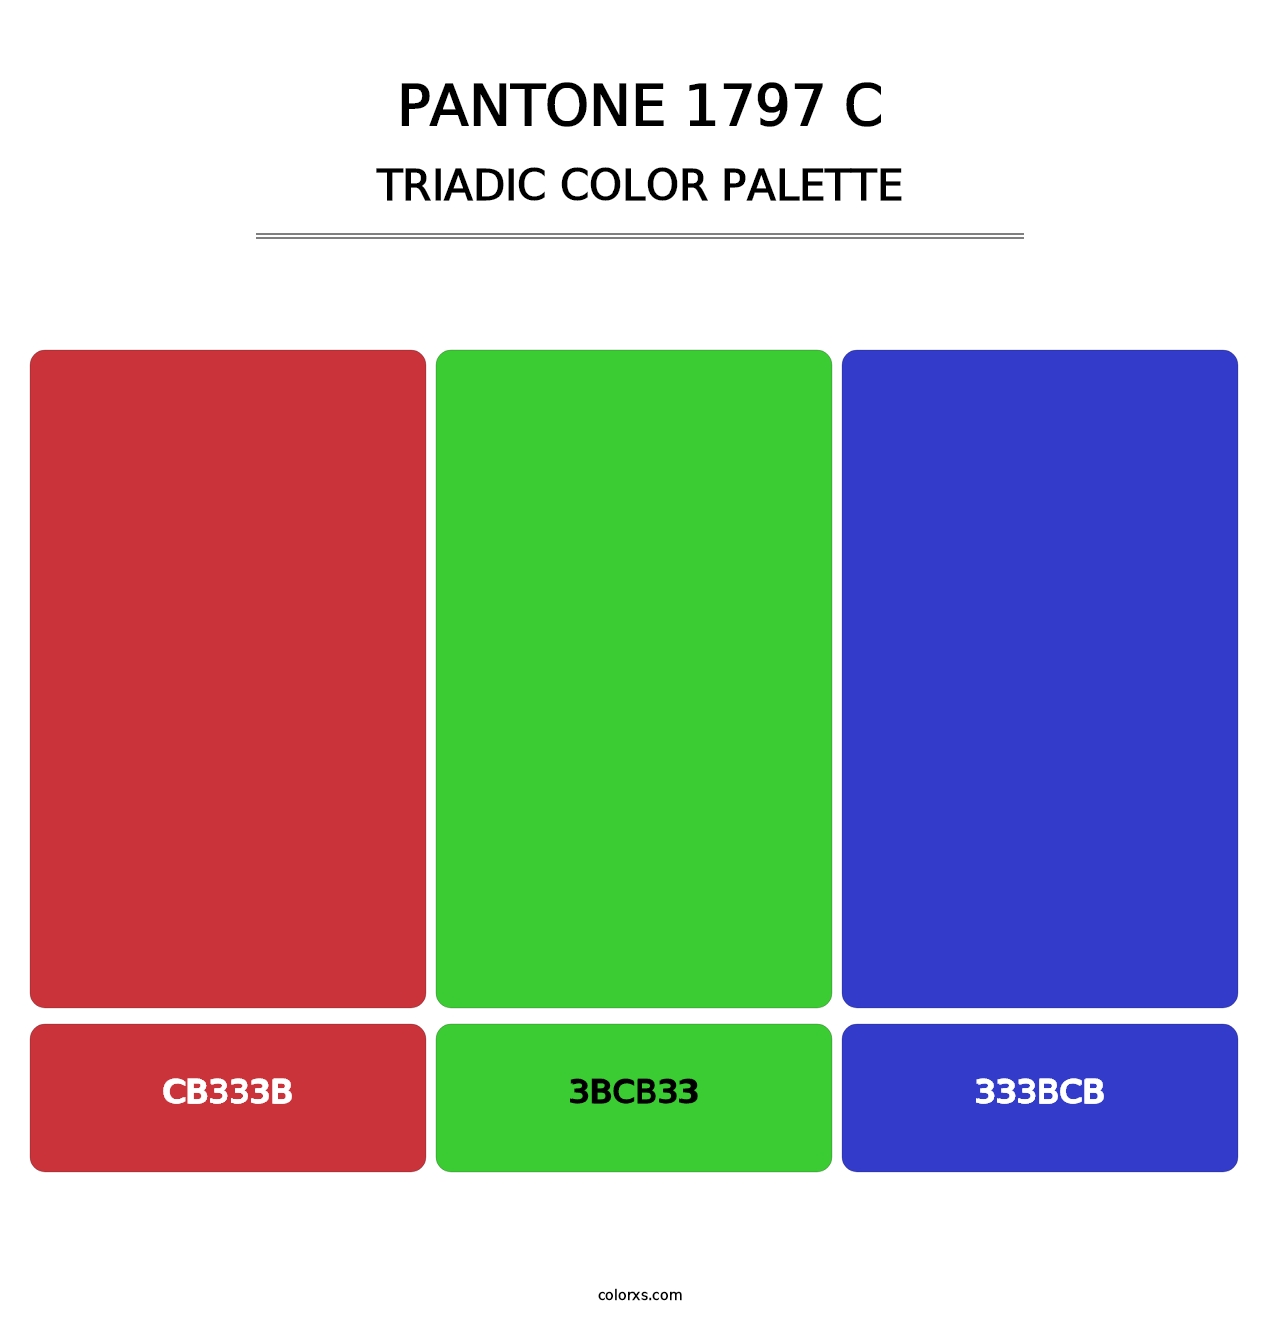 PANTONE 1797 C - Triadic Color Palette